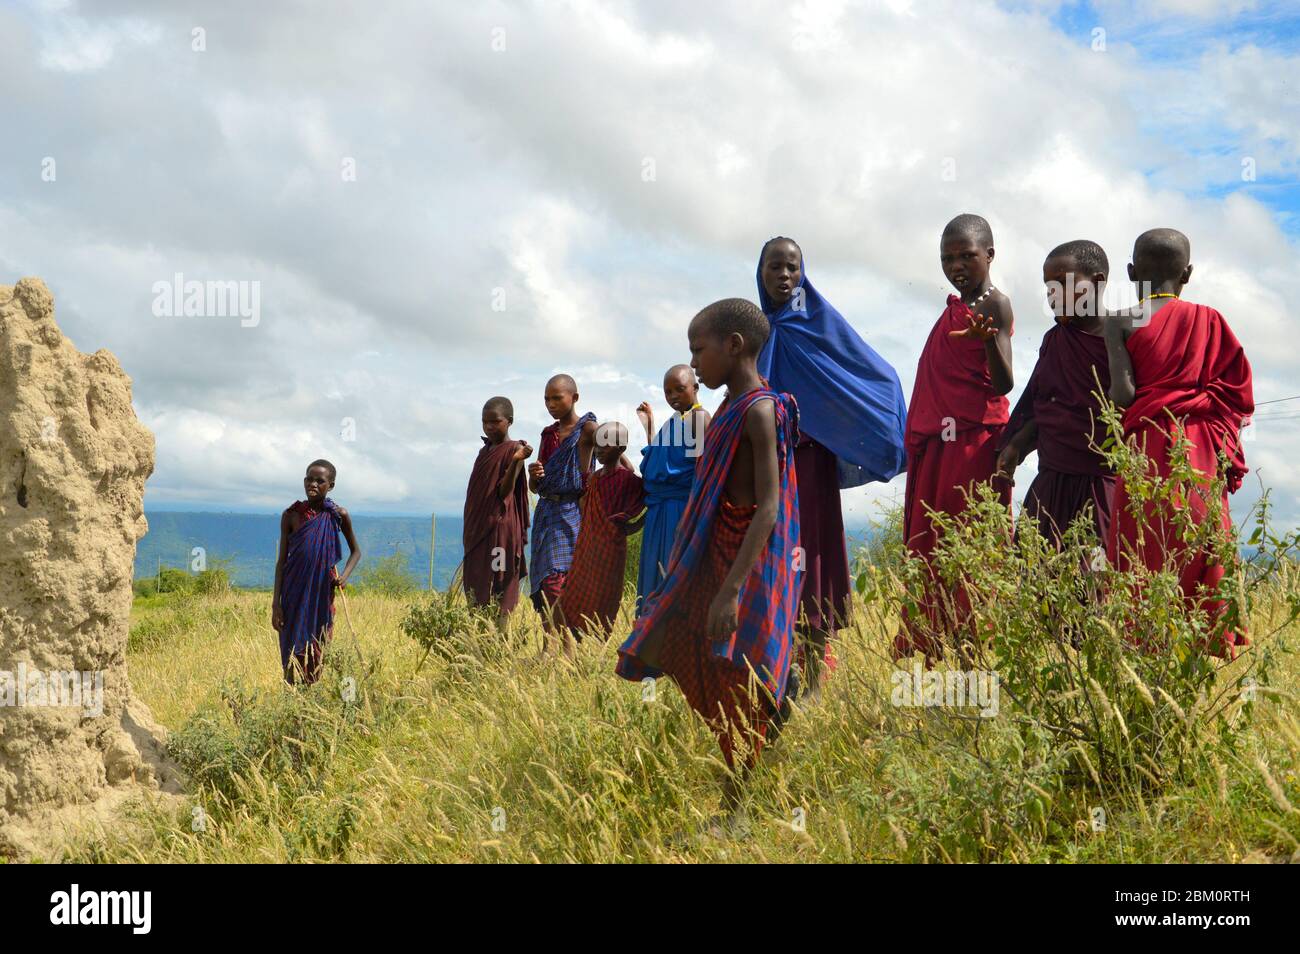 Junge Maasai weibliche Teenager Maasai ist eine ethnische Gruppe von halbnomadischen Menschen in Tansania fotografiert Stockfoto